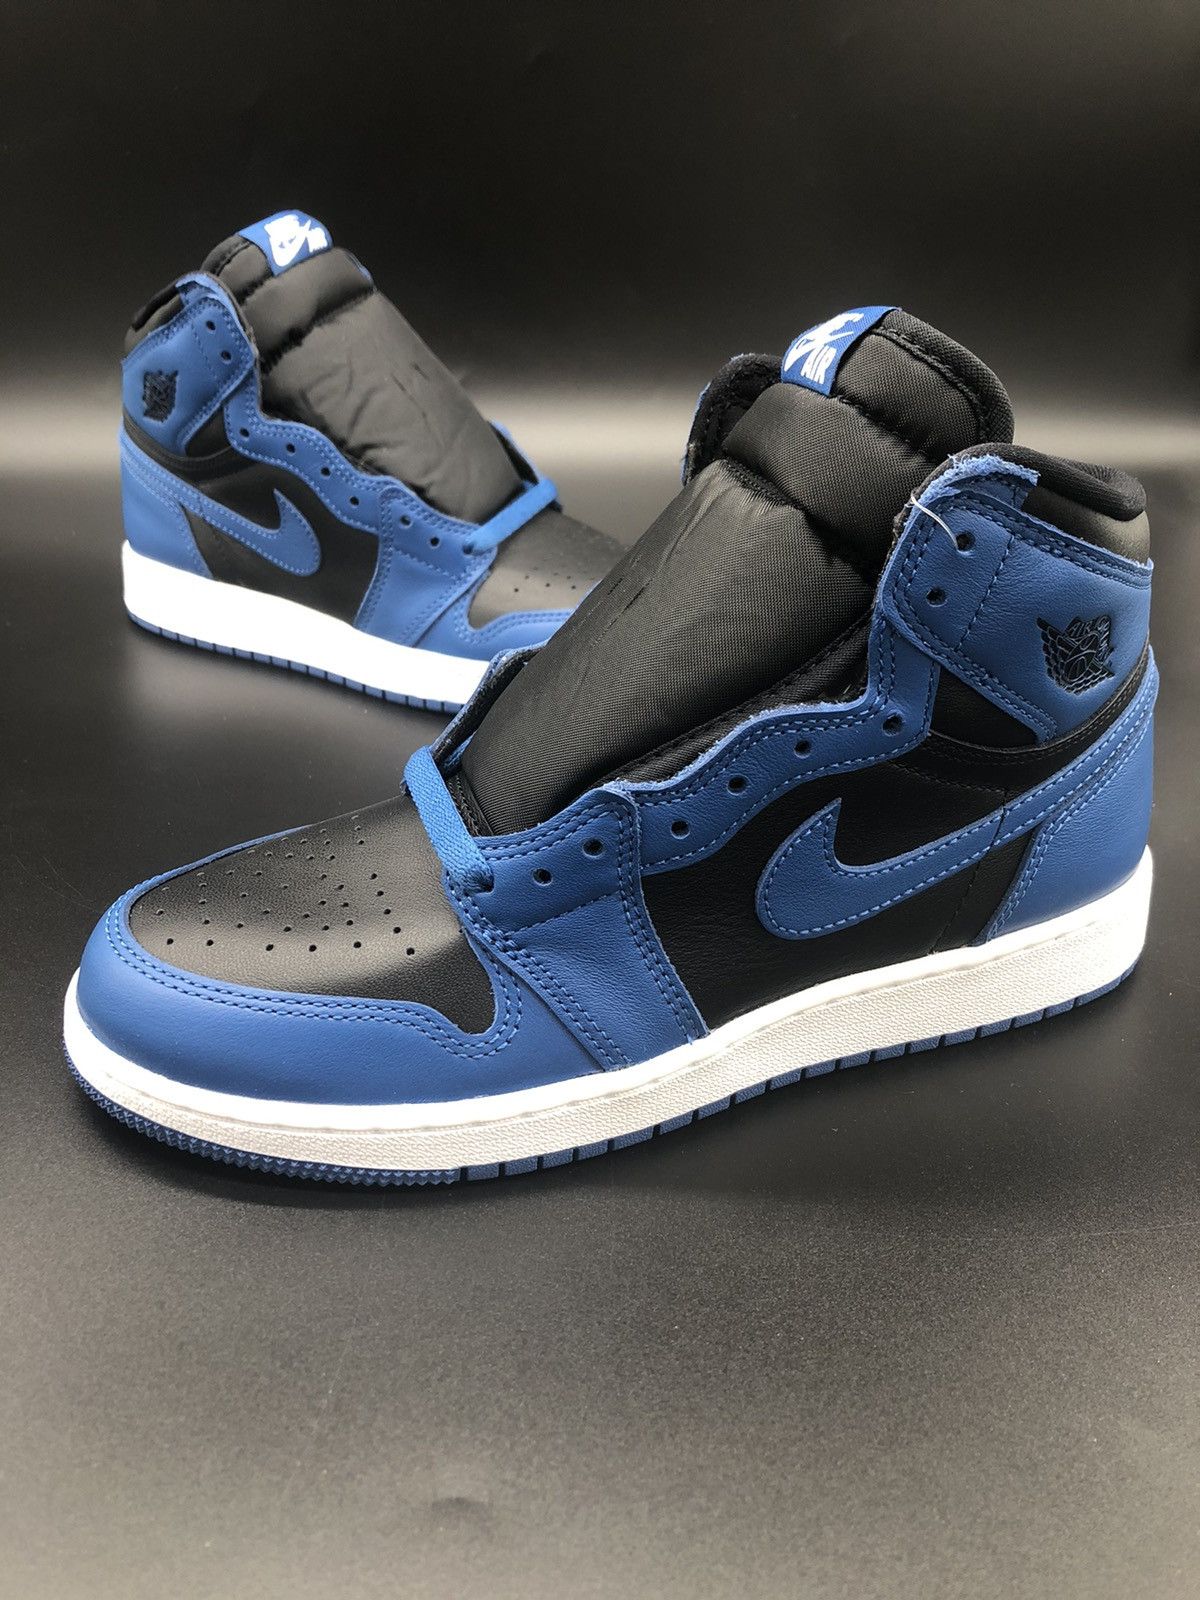 Pre-owned Jordan Brand 1 Retro High Og Dark Marina Blue (gs) Shoes